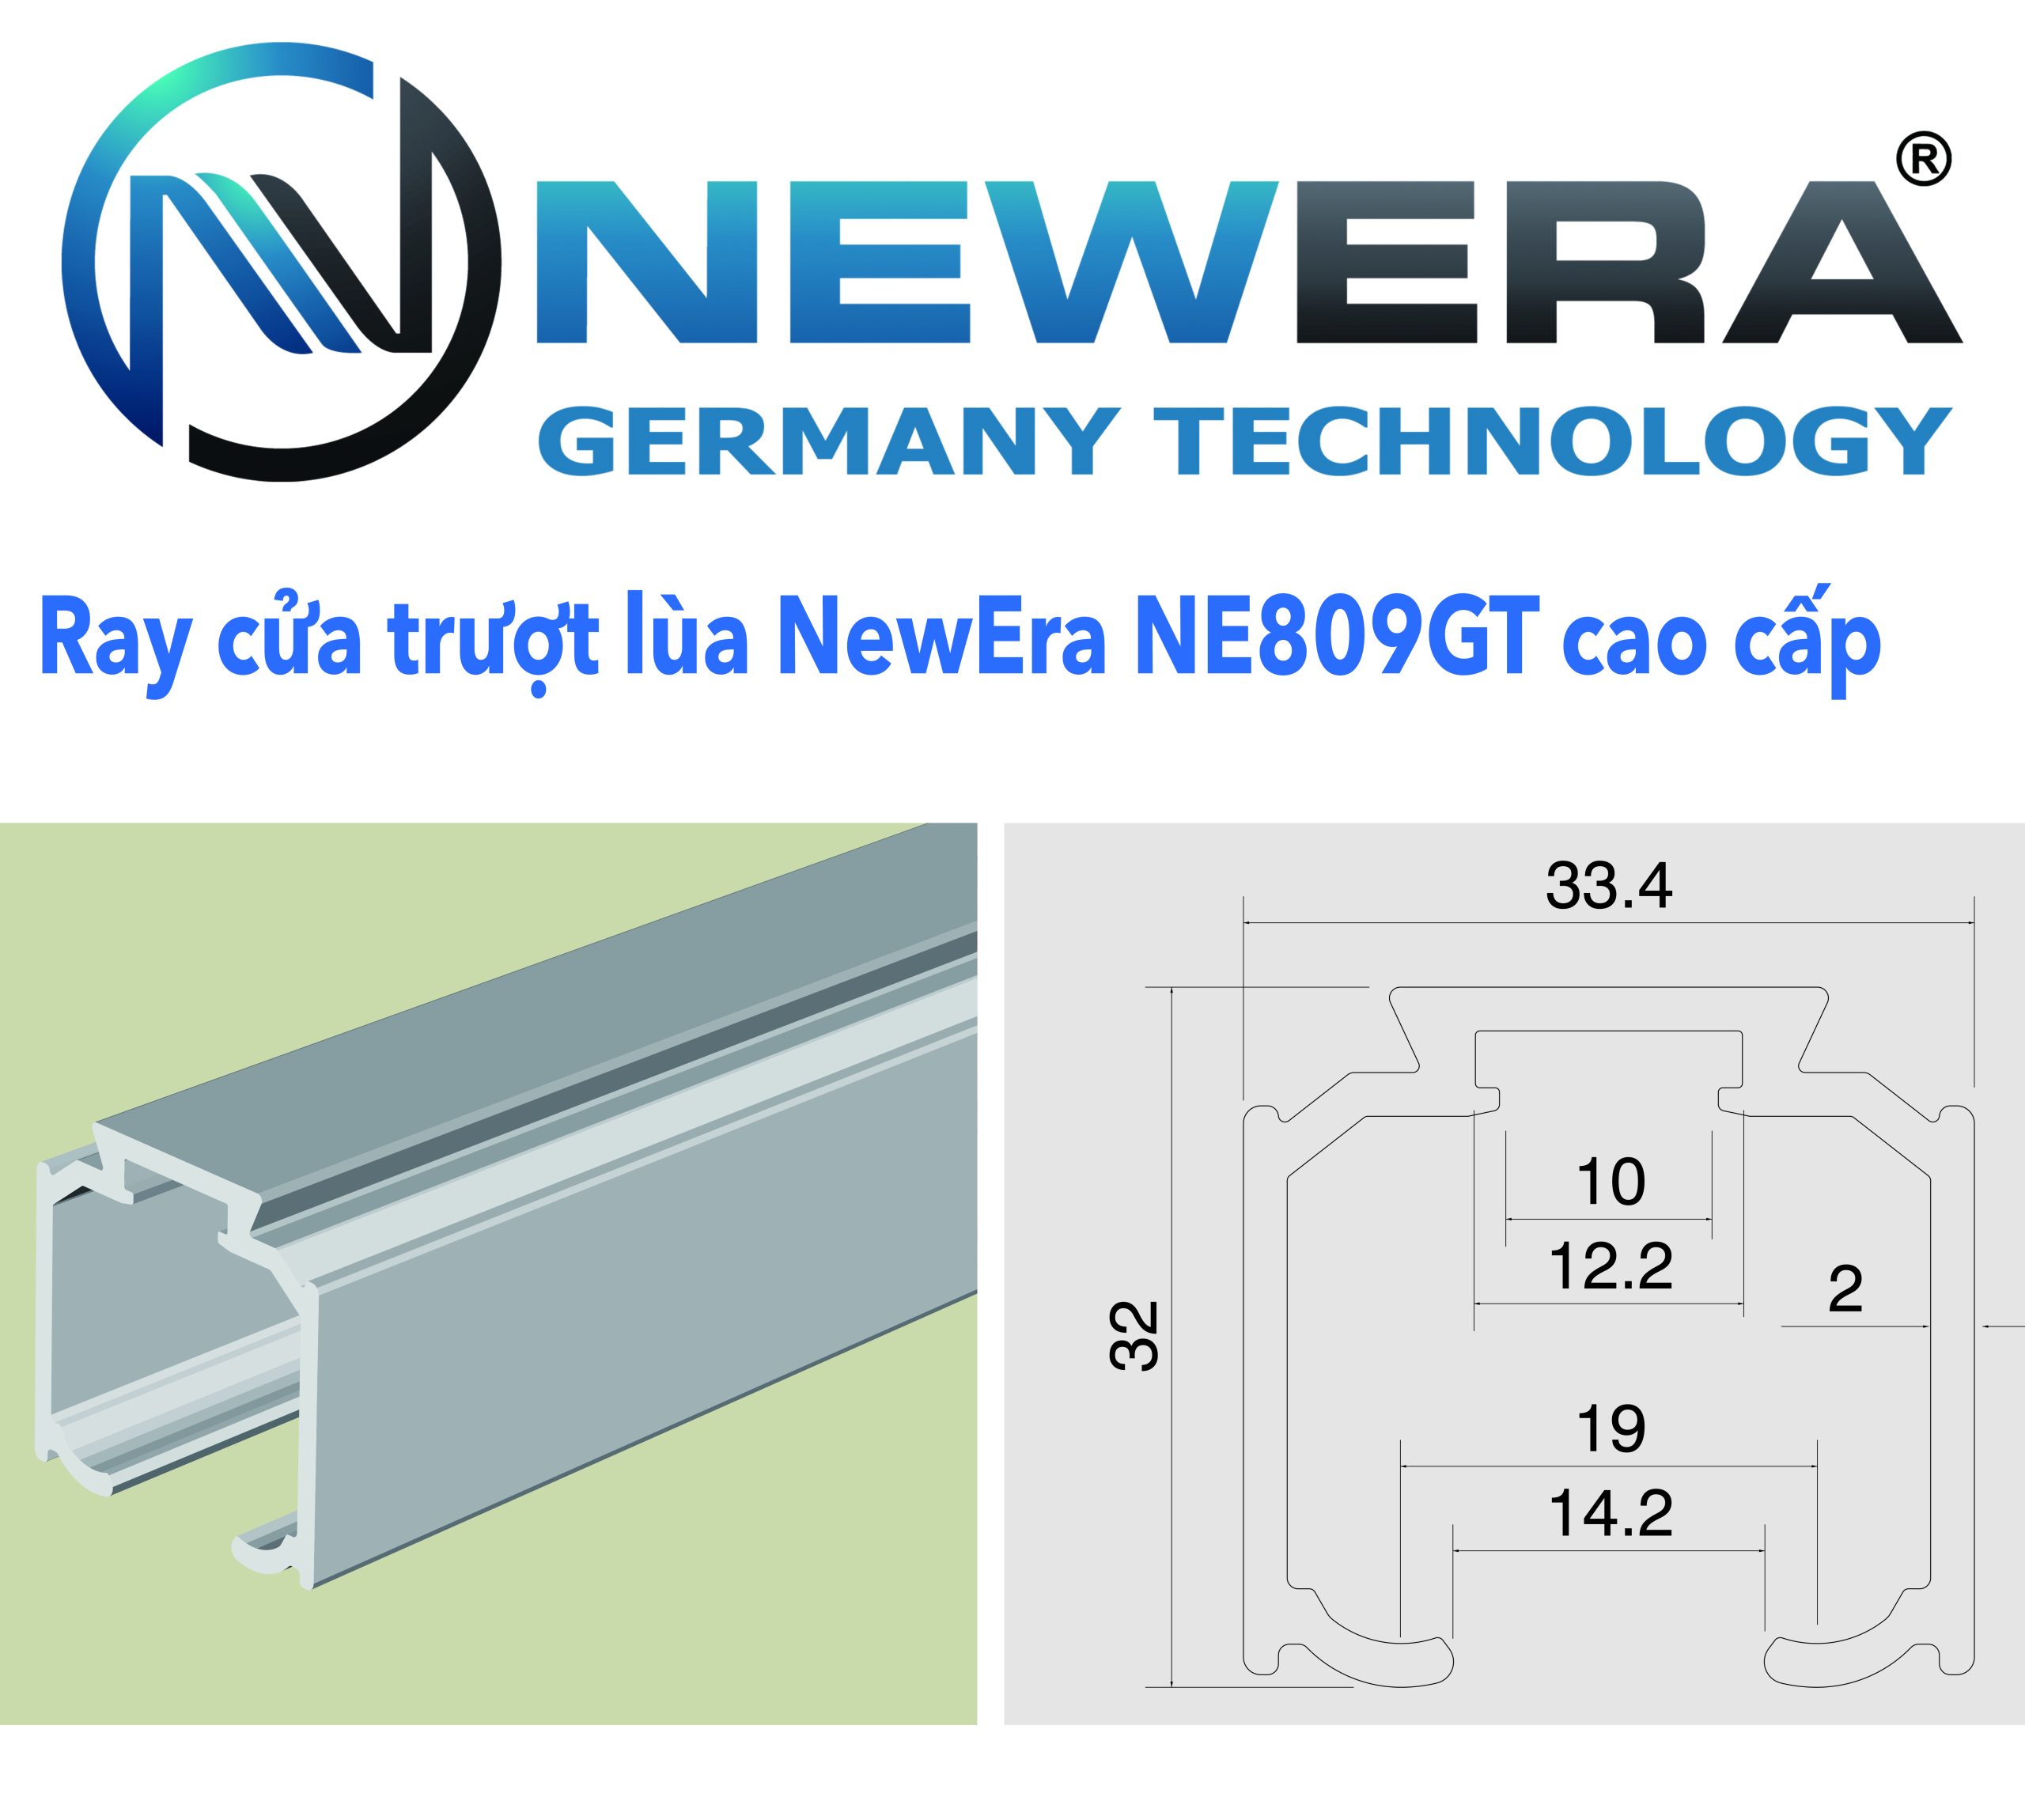 Ray cua truot lua truot gap NewEra NE809GT dai 3m scaled